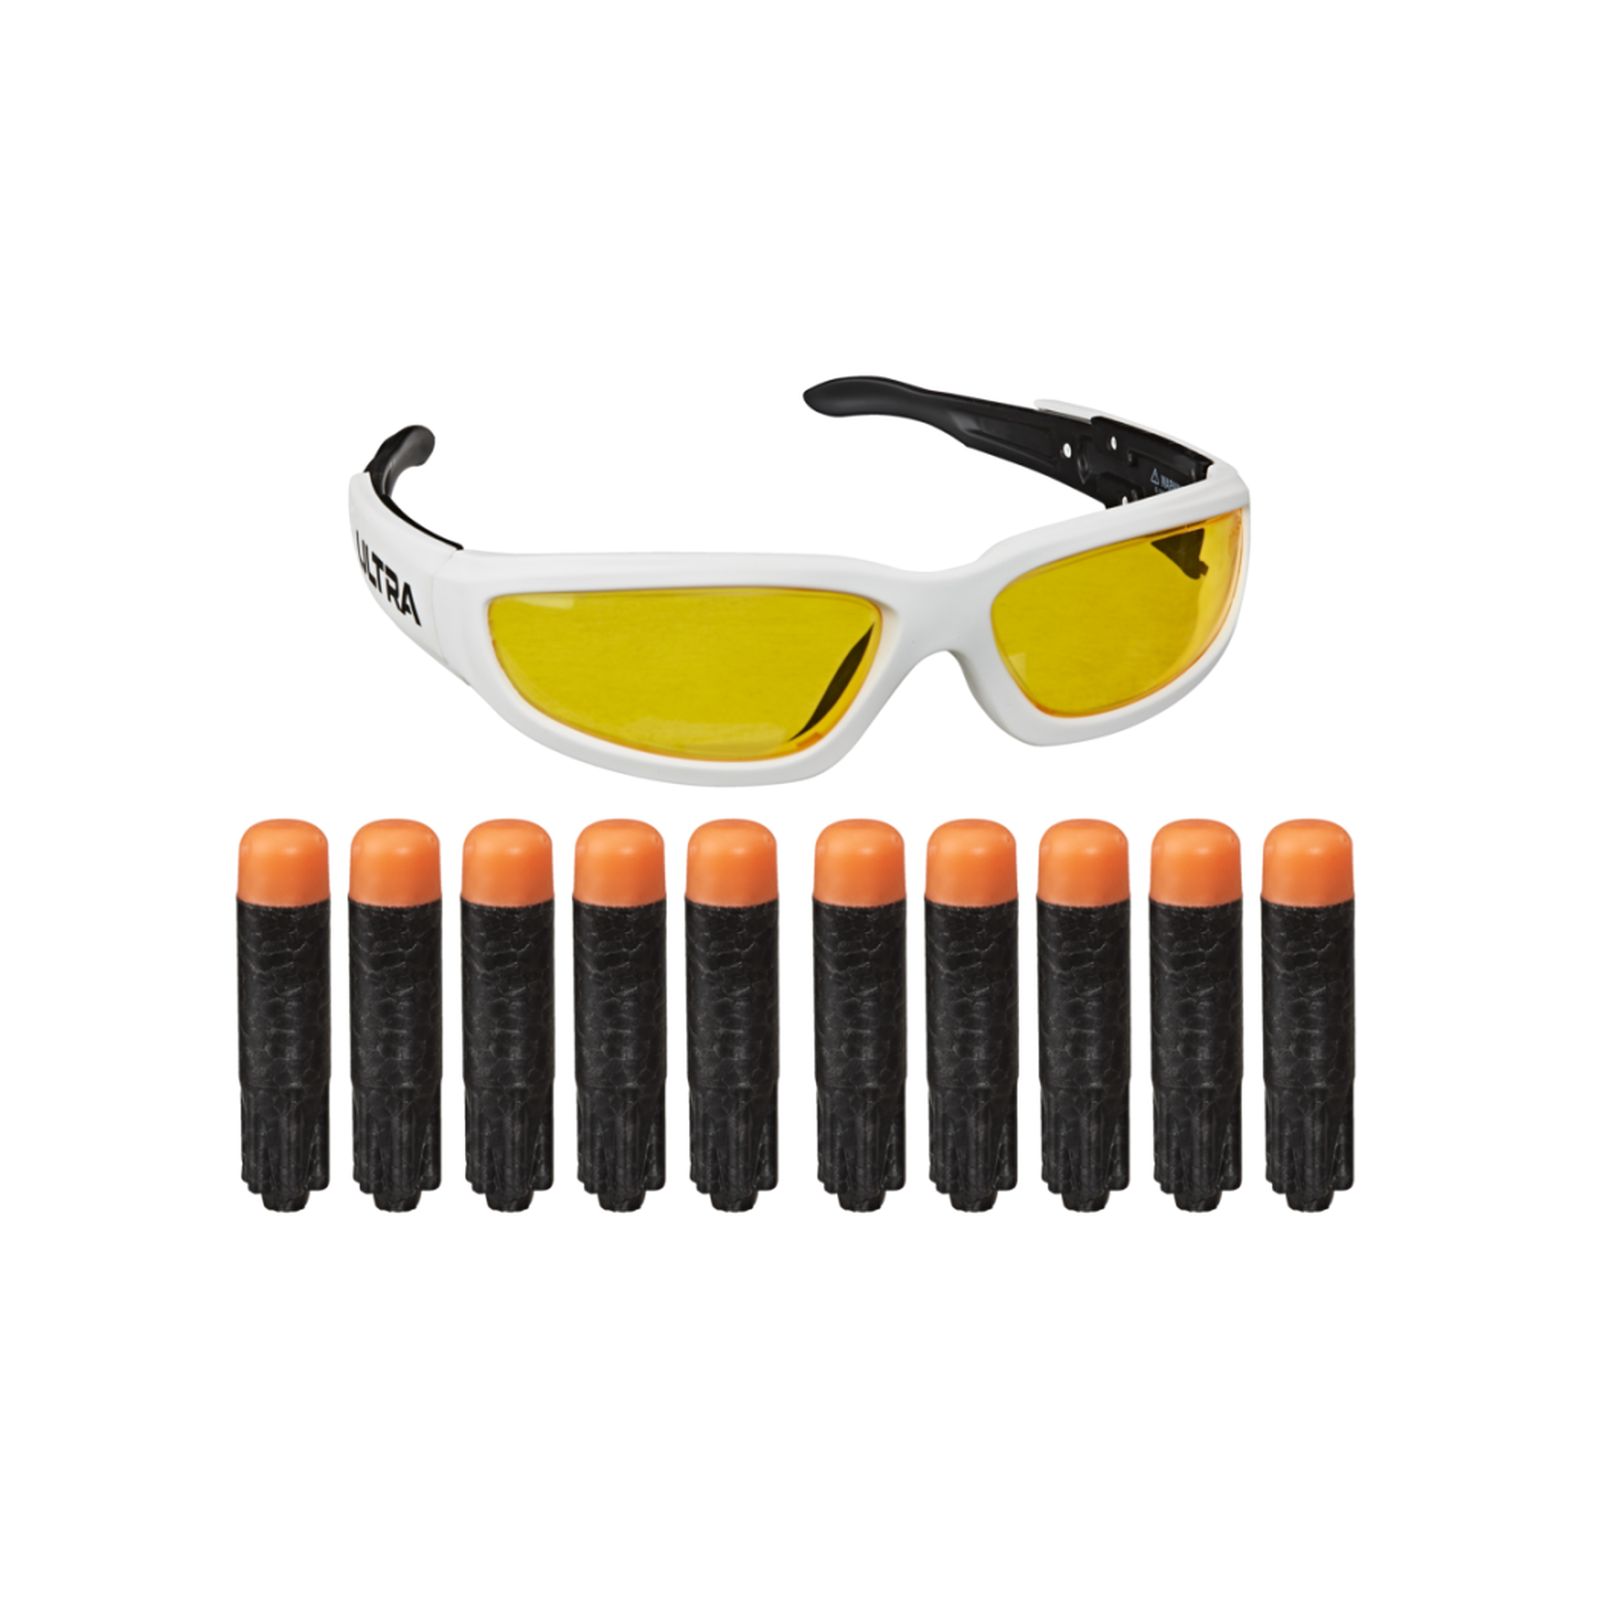 Nerf ultra – 10 dardi e occhiali vision gear (ricarica per blaster nerf ultra con incluso un paio di occhiali protettivi) - NERF